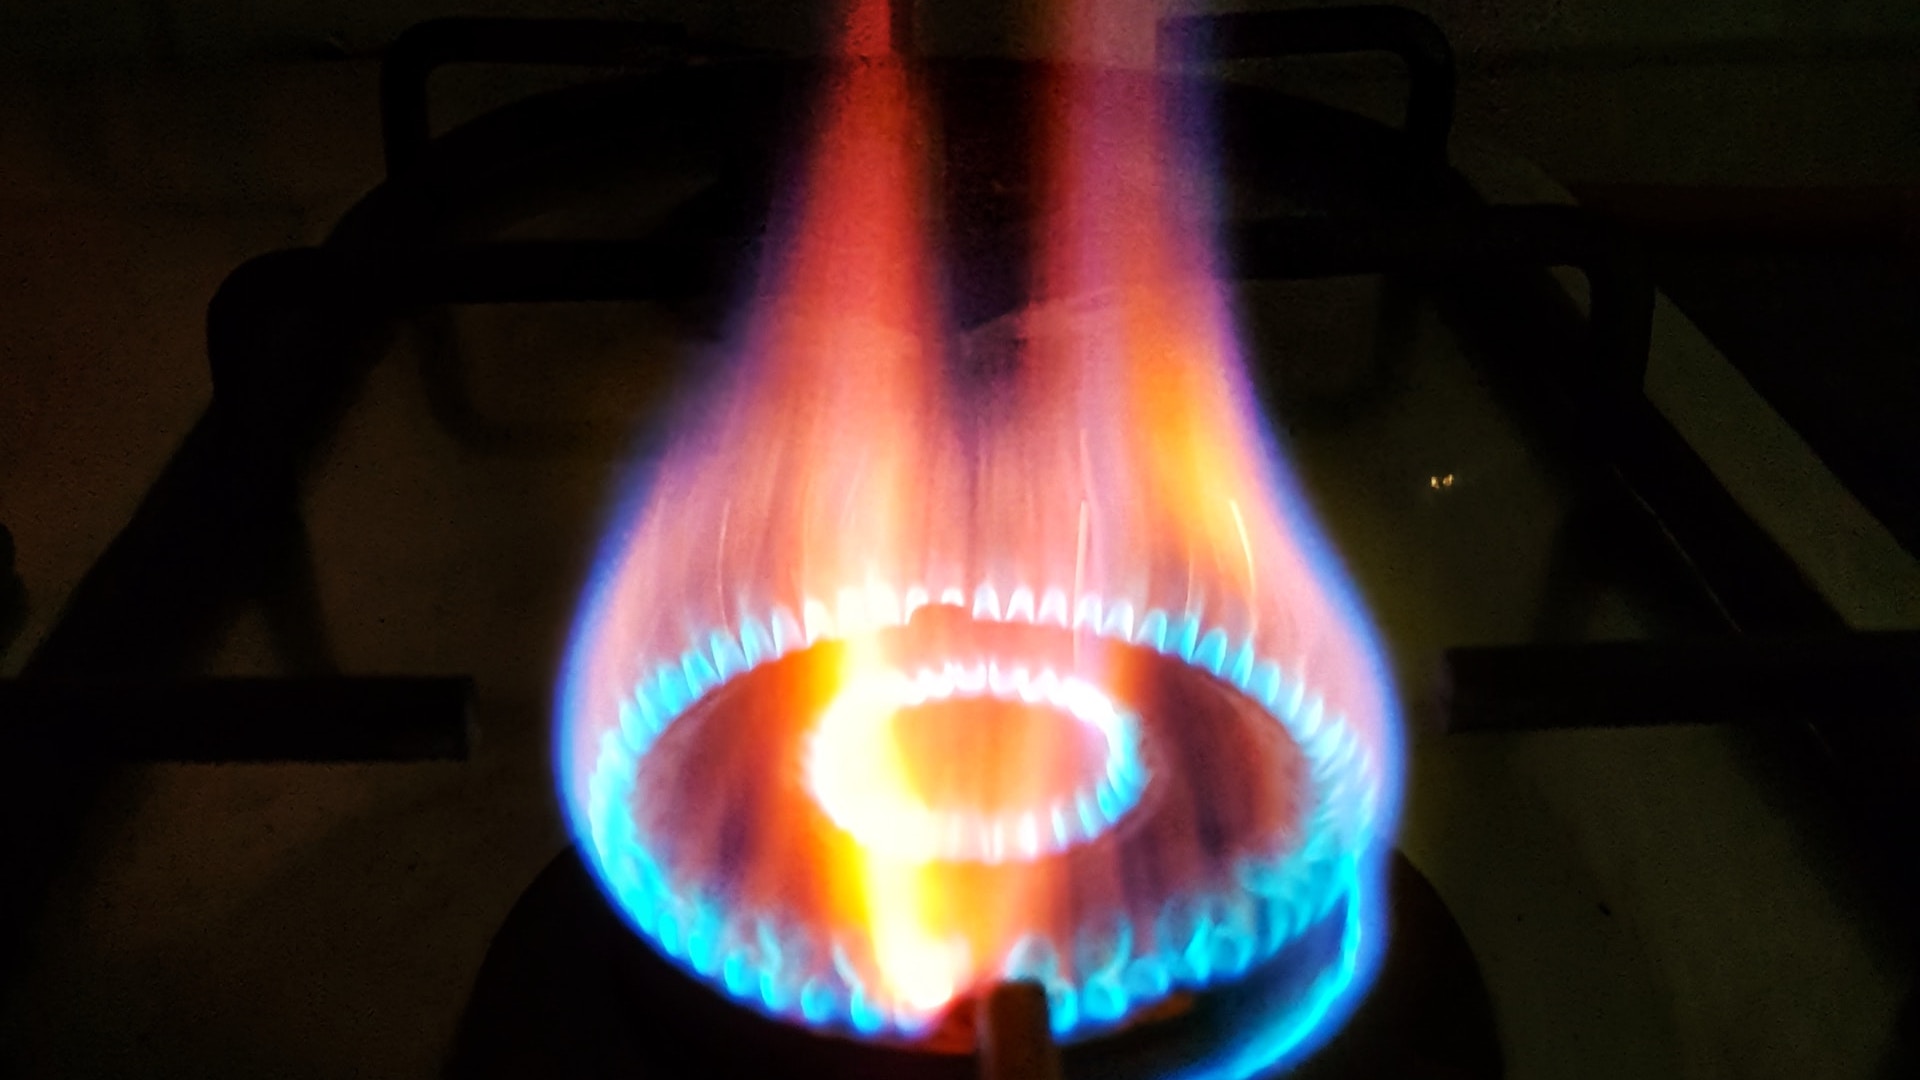 Цены на газ в Европе выросли на 6% за тысячу кубометров